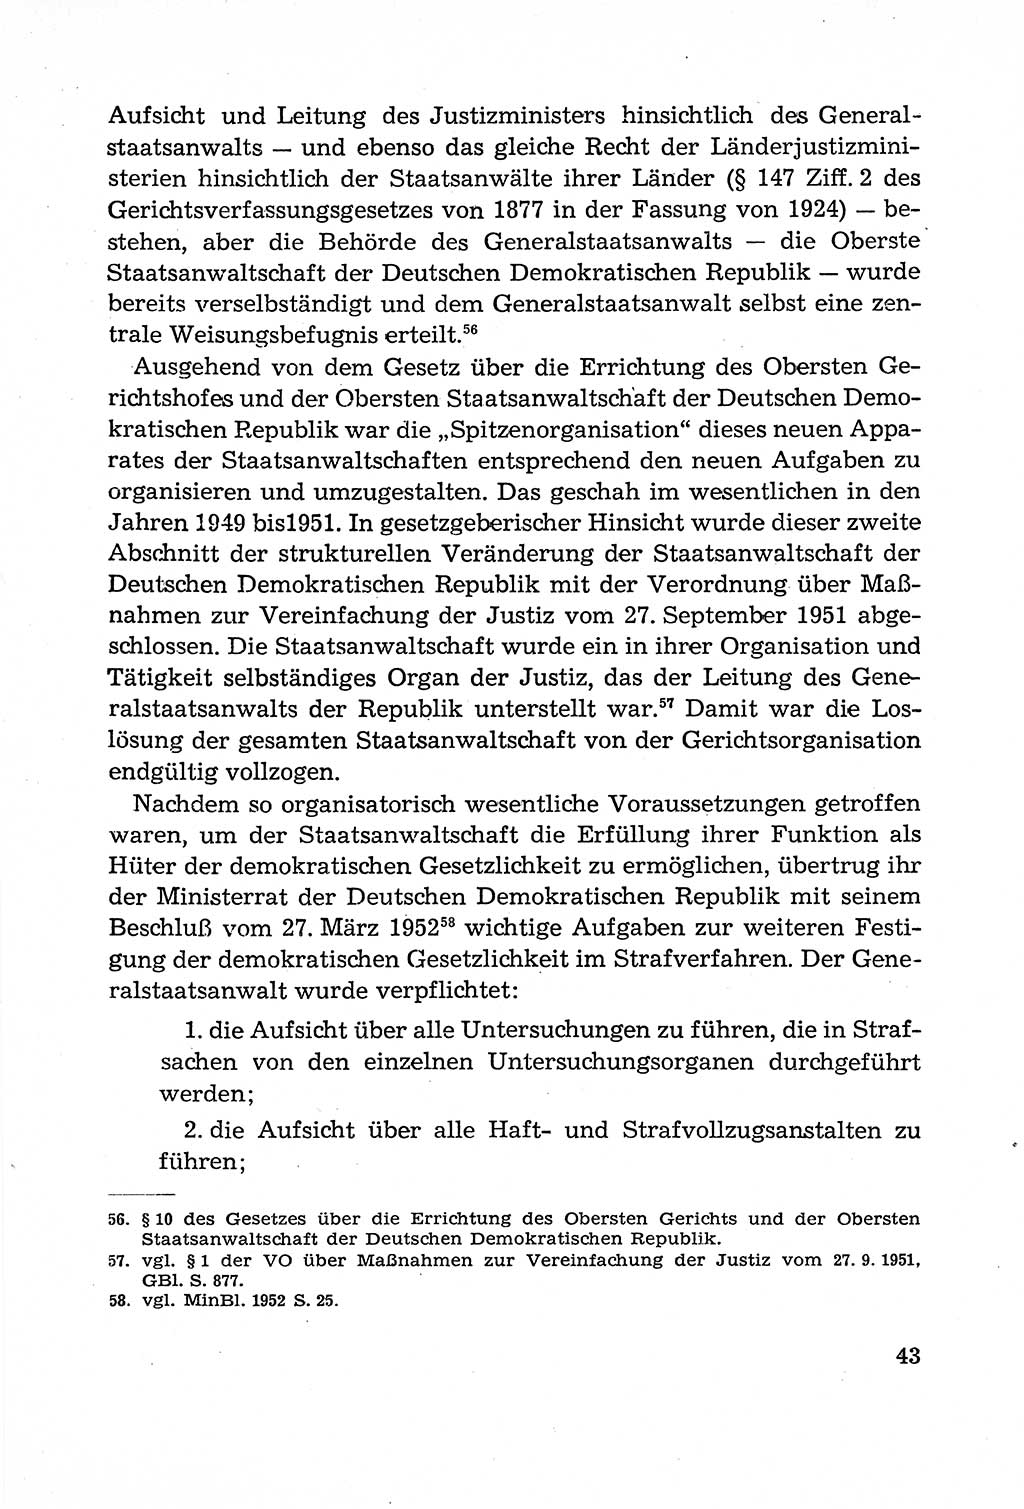 Leitfaden des Strafprozeßrechts der Deutschen Demokratischen Republik (DDR) 1959, Seite 43 (LF StPR DDR 1959, S. 43)